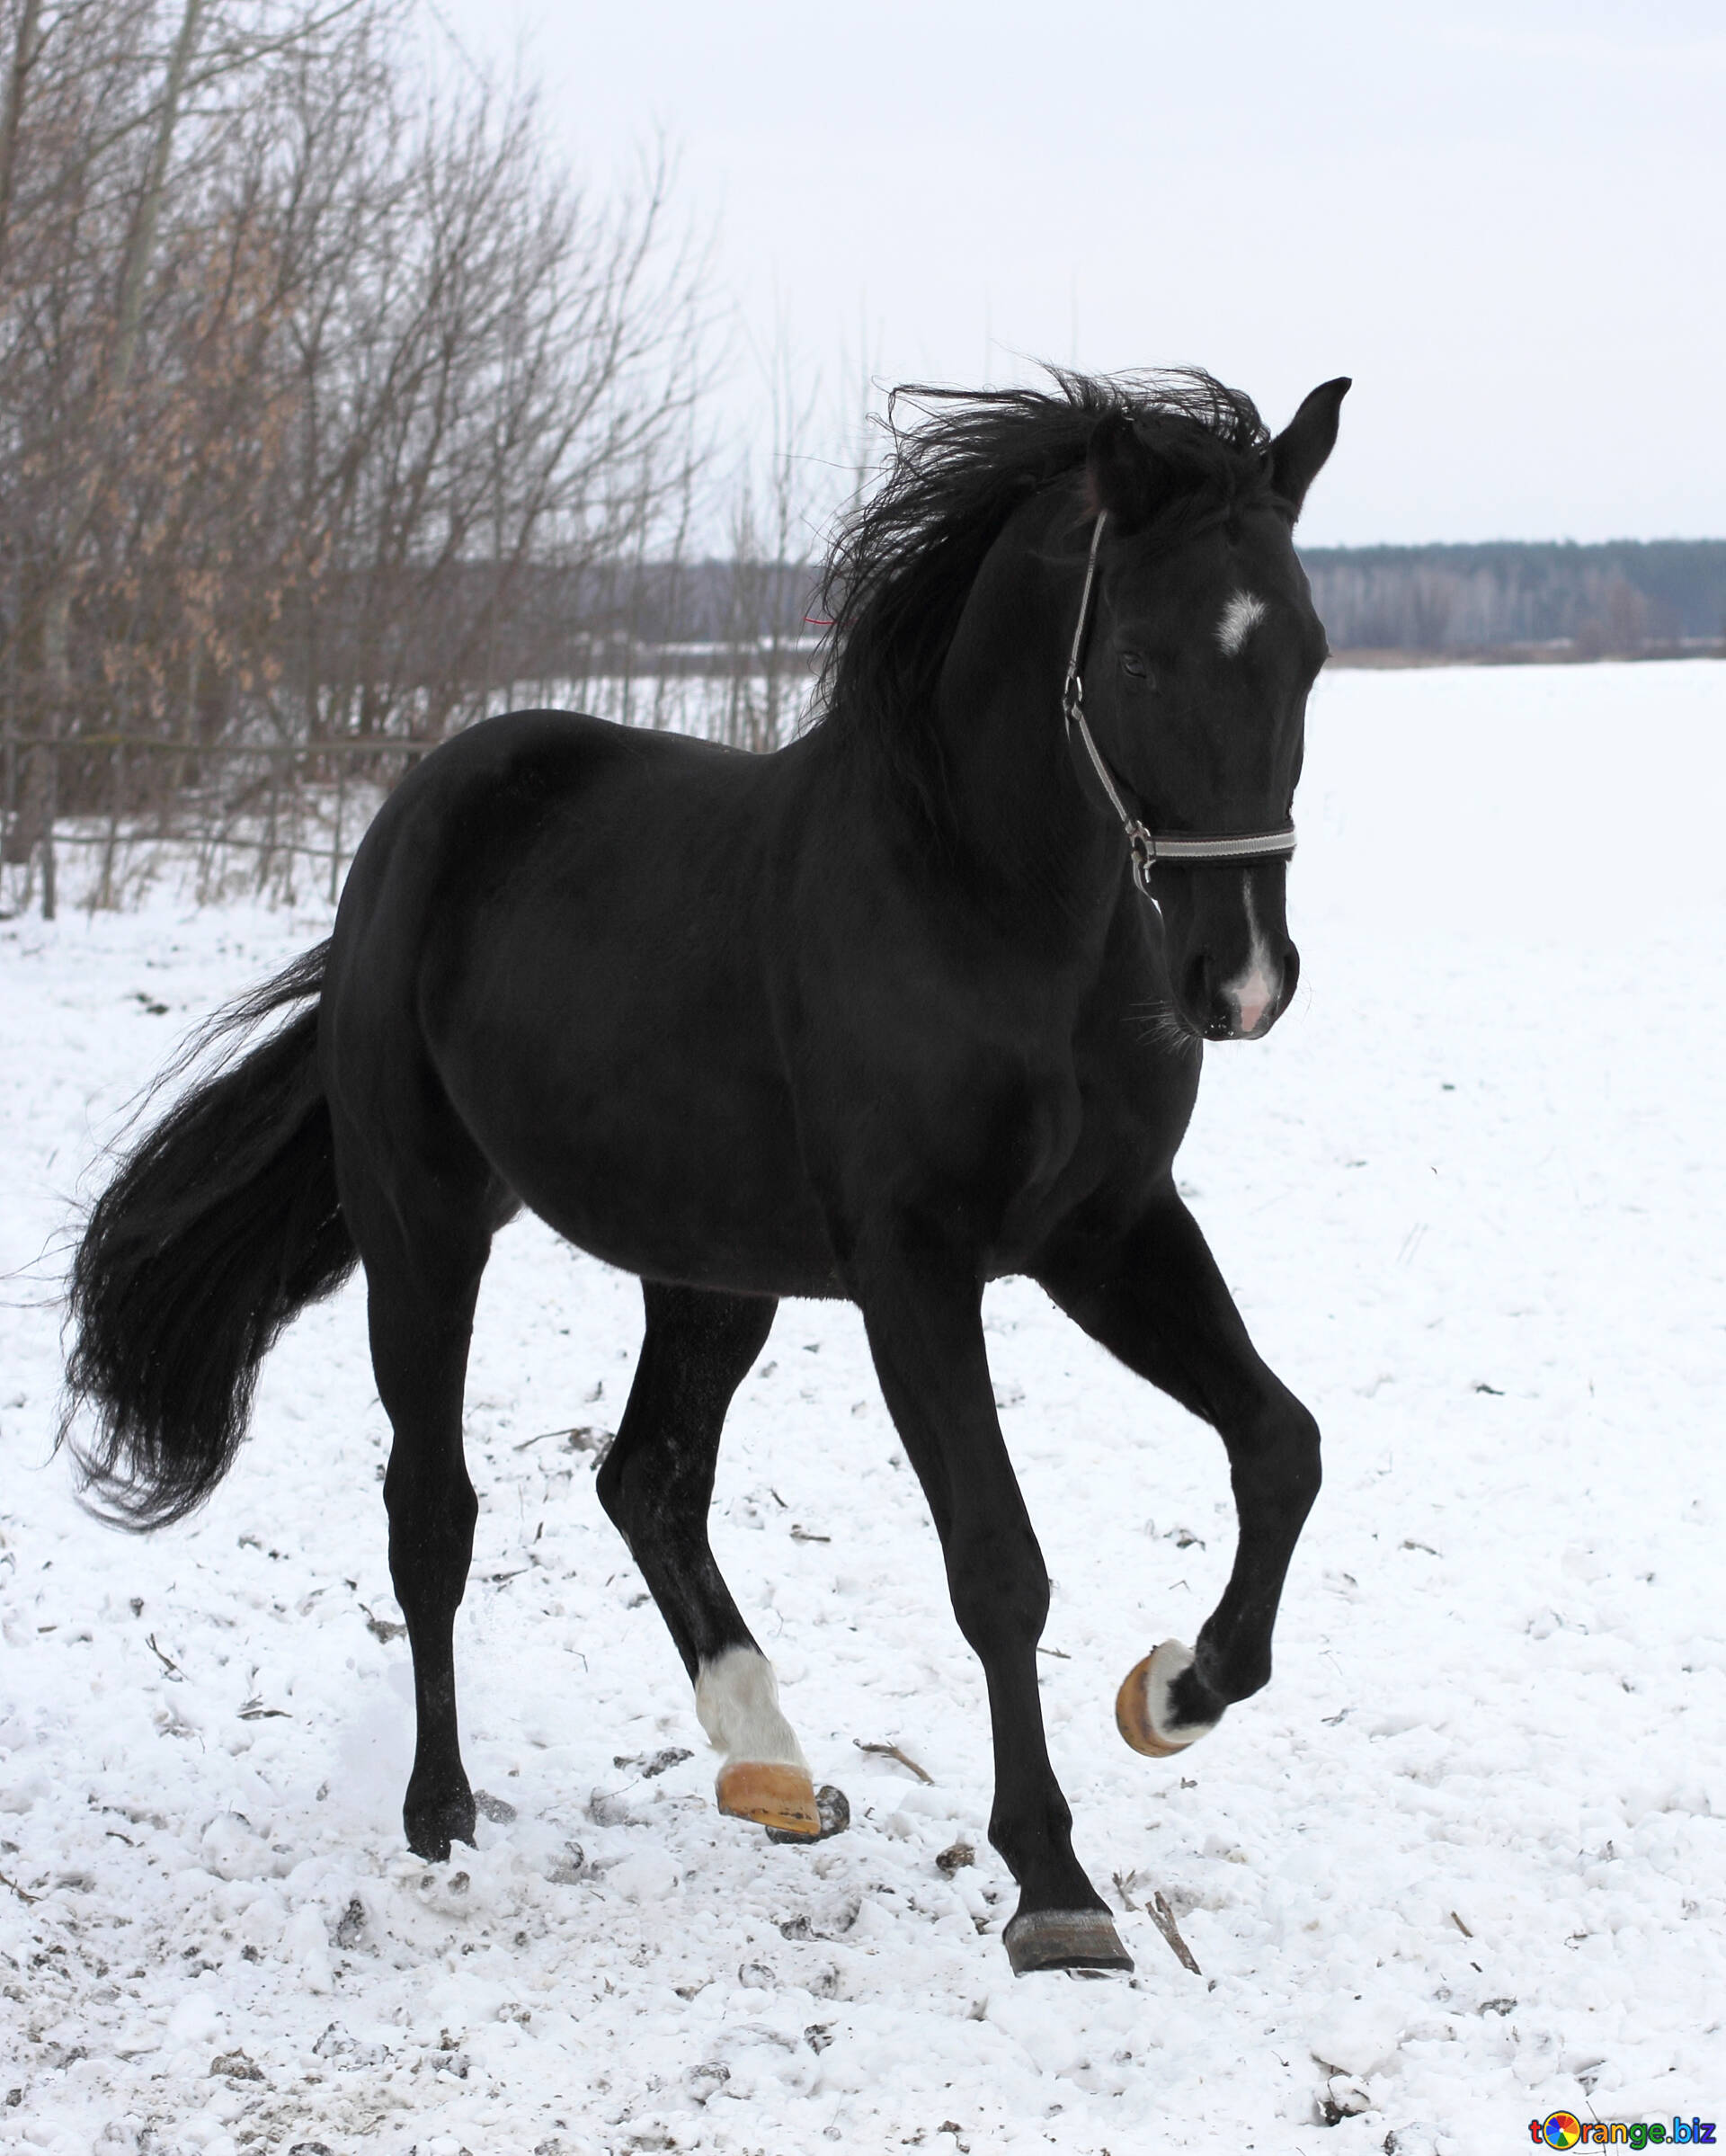 Jogos Pretos Do Cavalo Do Frisão No Inverno Foto de Stock - Imagem